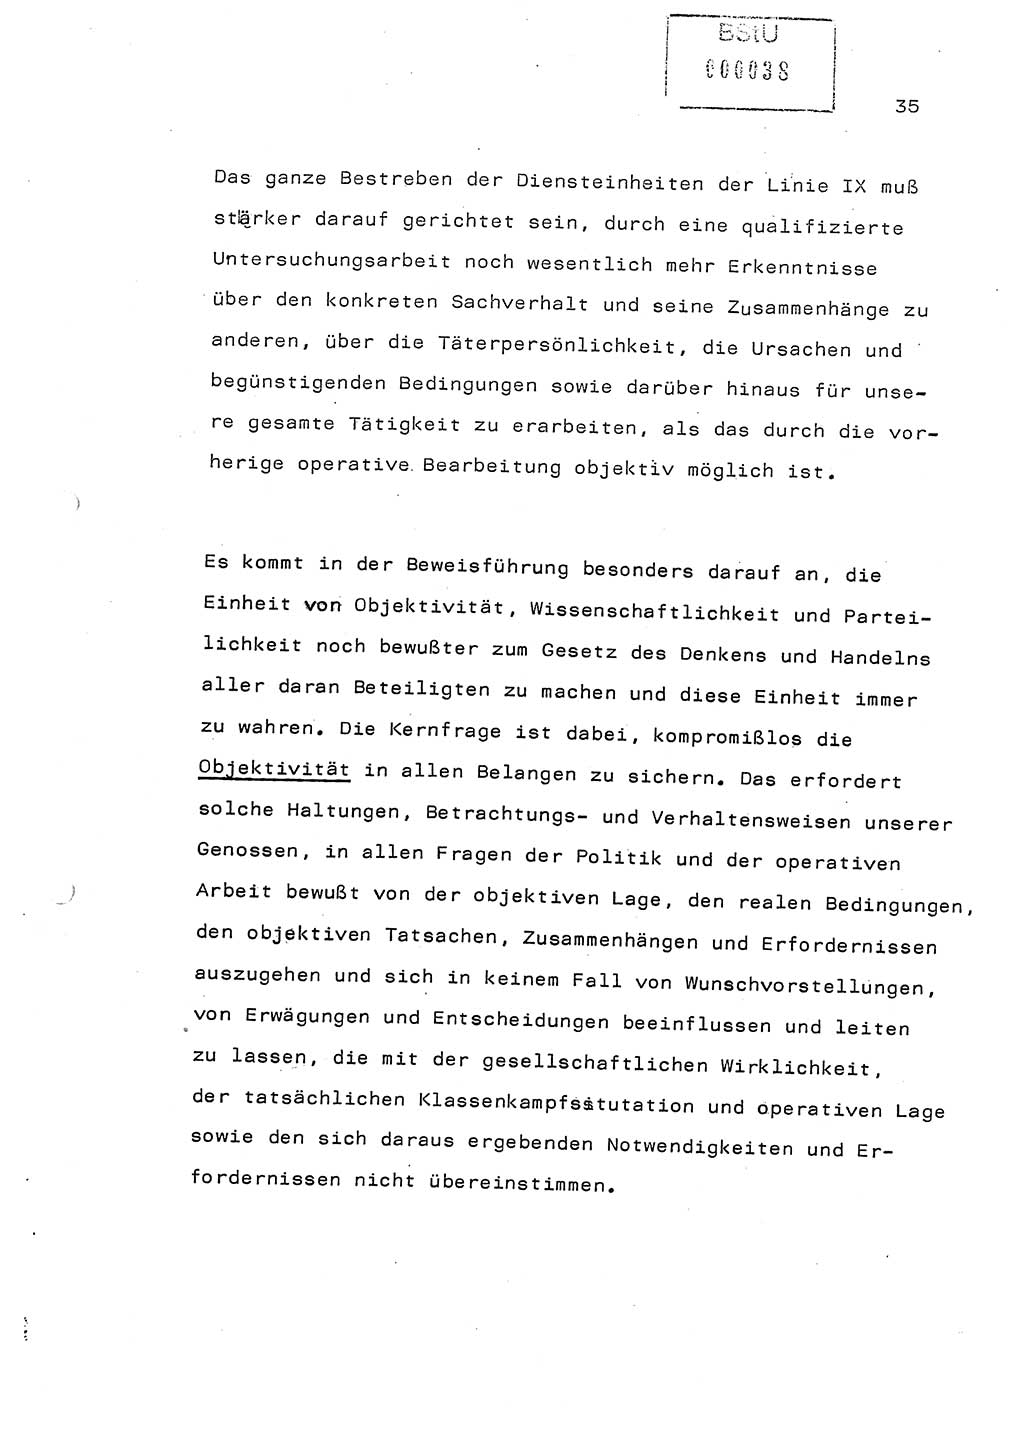 Referat (Generaloberst Erich Mielke) auf der Zentralen Dienstkonferenz am 24.5.1979 [Ministerium für Staatssicherheit (MfS), Deutsche Demokratische Republik (DDR), Der Minister], Berlin 1979, Seite 35 (Ref. DK DDR MfS Min. /79 1979, S. 35)